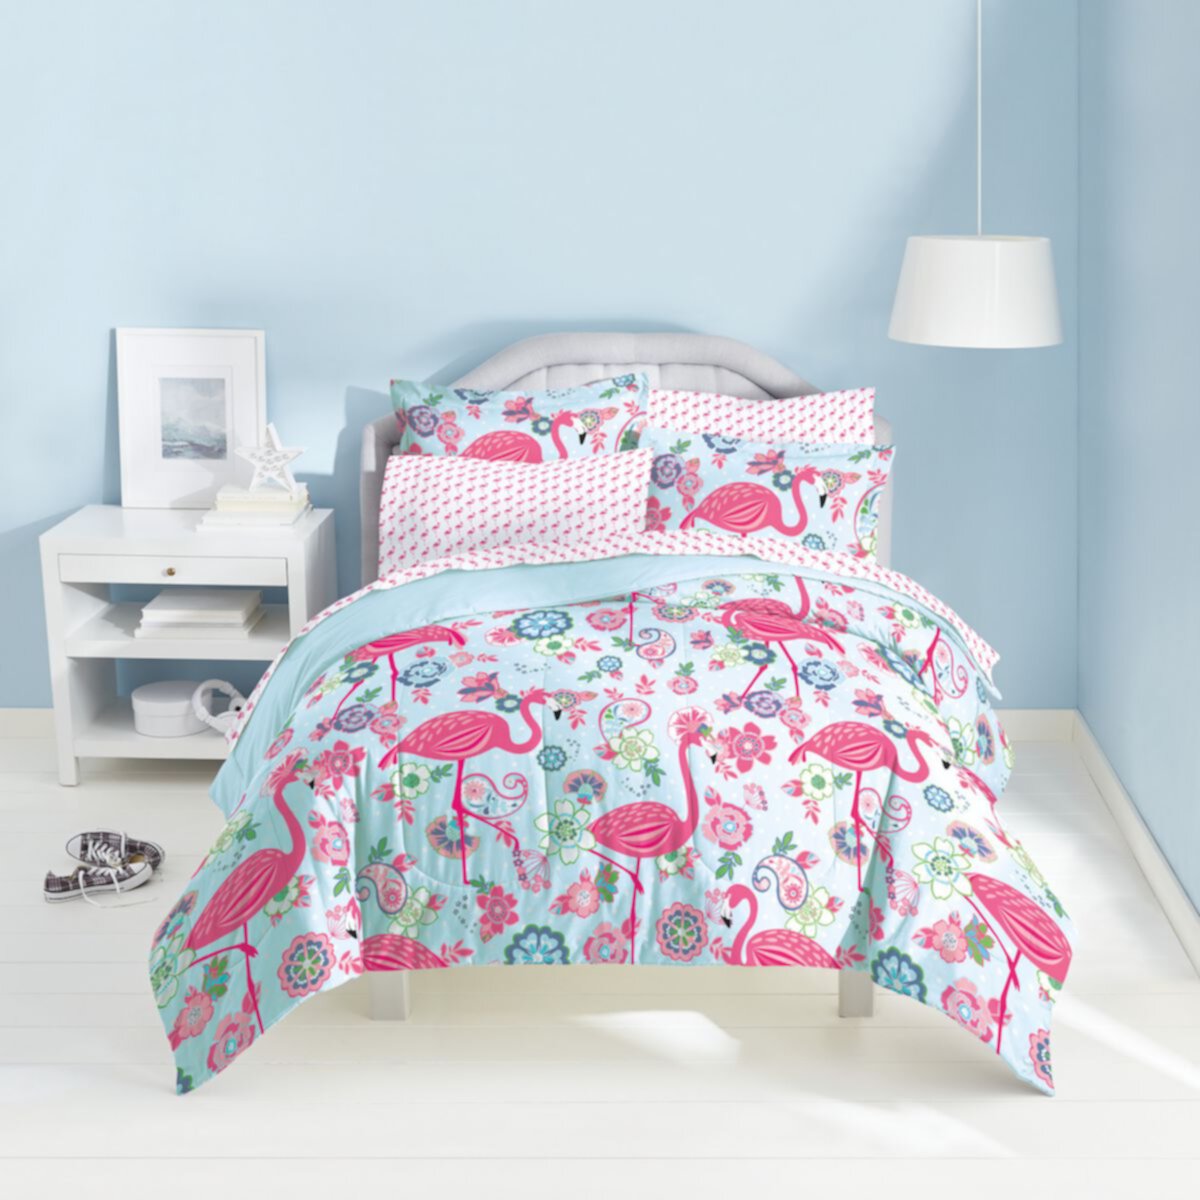 Комплект постельного белья Dream Factory Flamingo Dream Factory